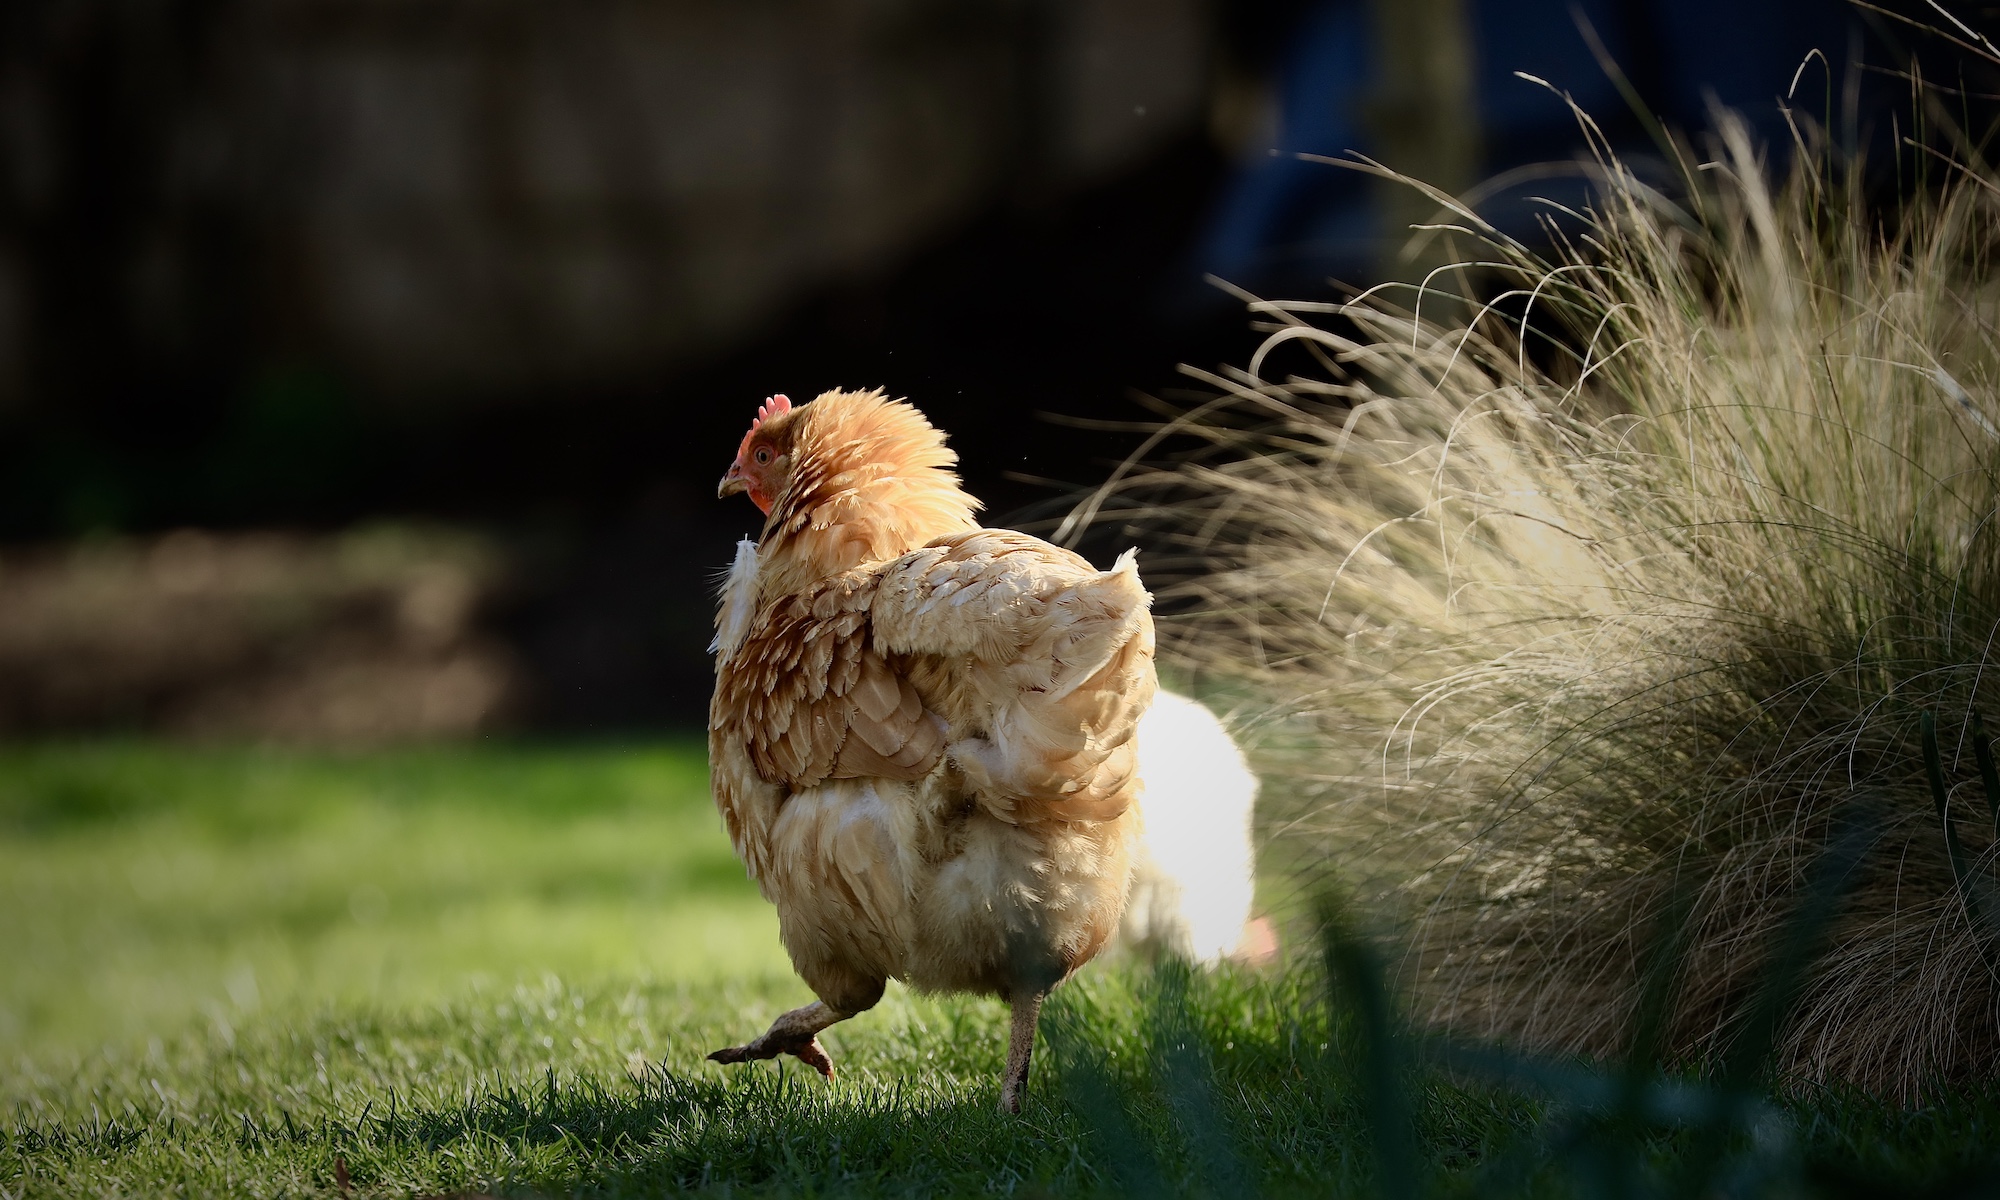 Fluffy free range chicken running through cotswold garden